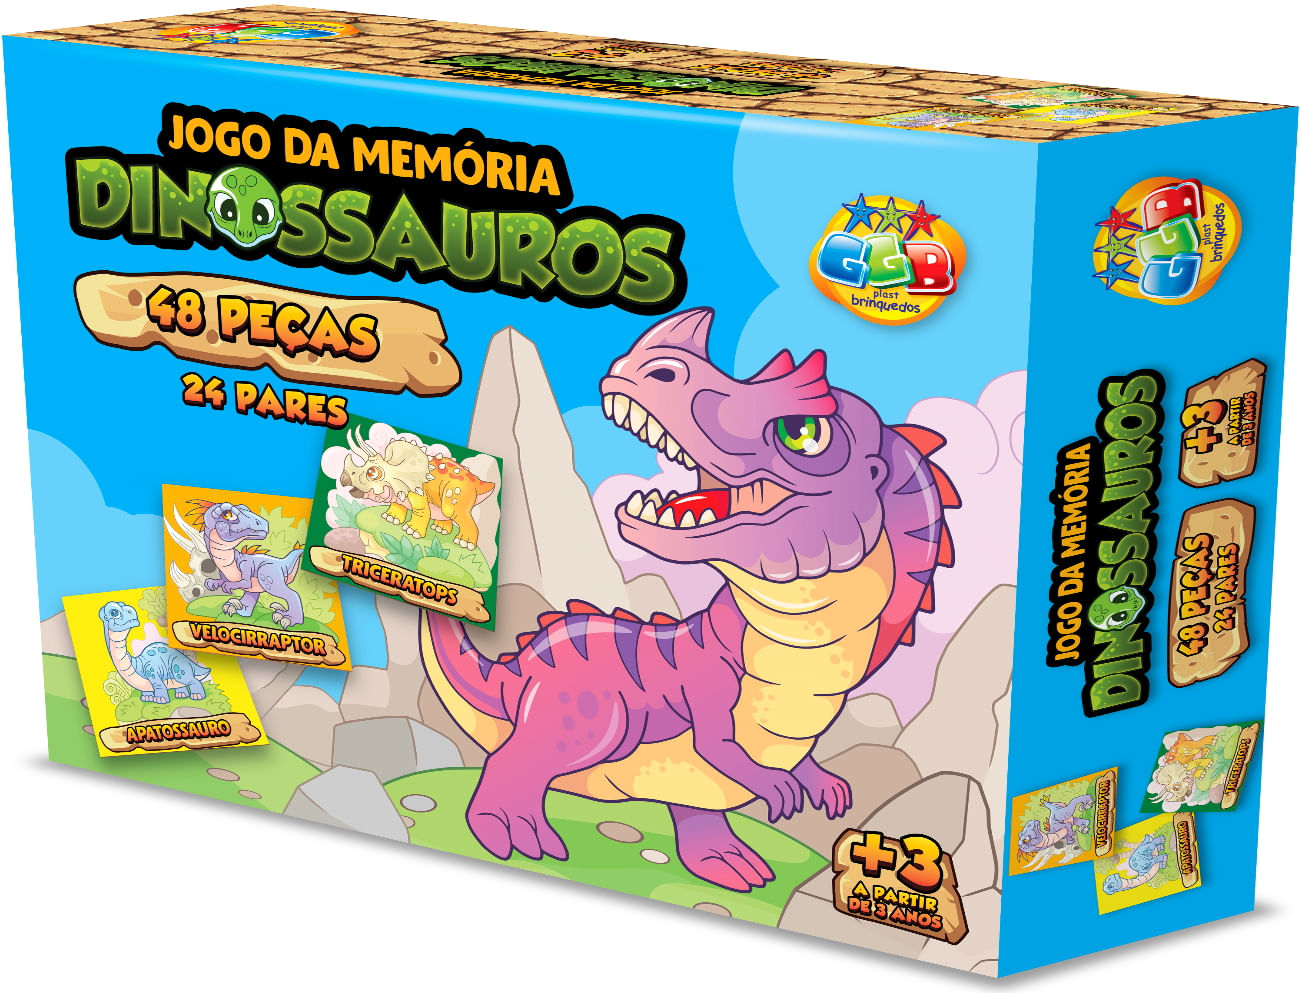 Jogo da Memória Dinossauros 40 peças - Pais&Filhos - Papelaria Mogipel